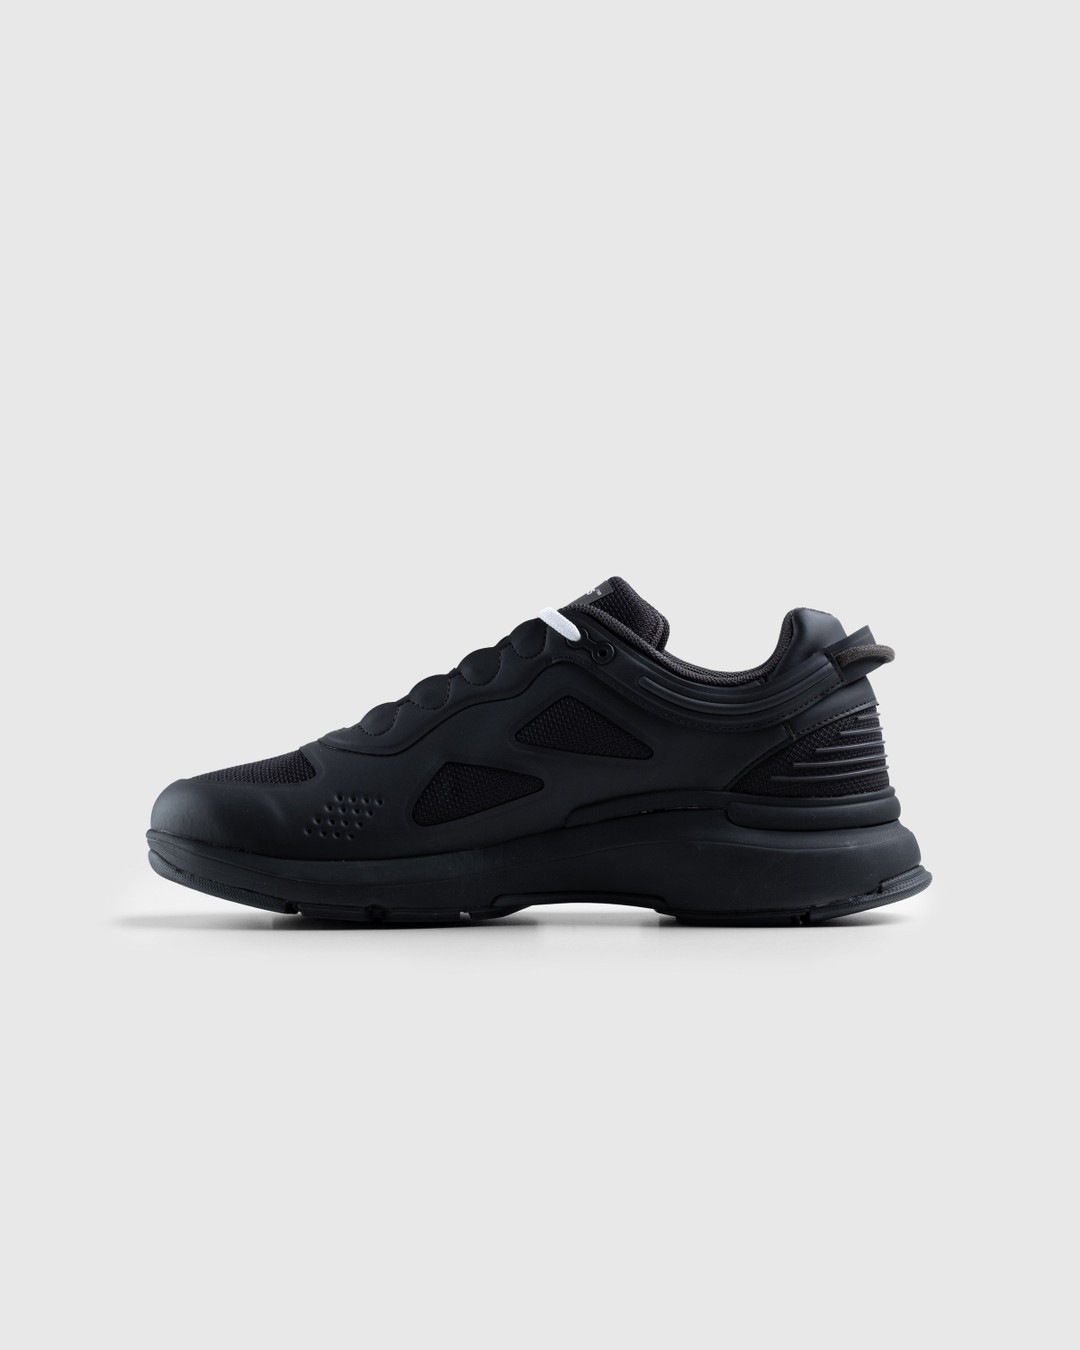 Athletics Footwear – One.2 Black - Low Top Sneakers - Black - Image 2